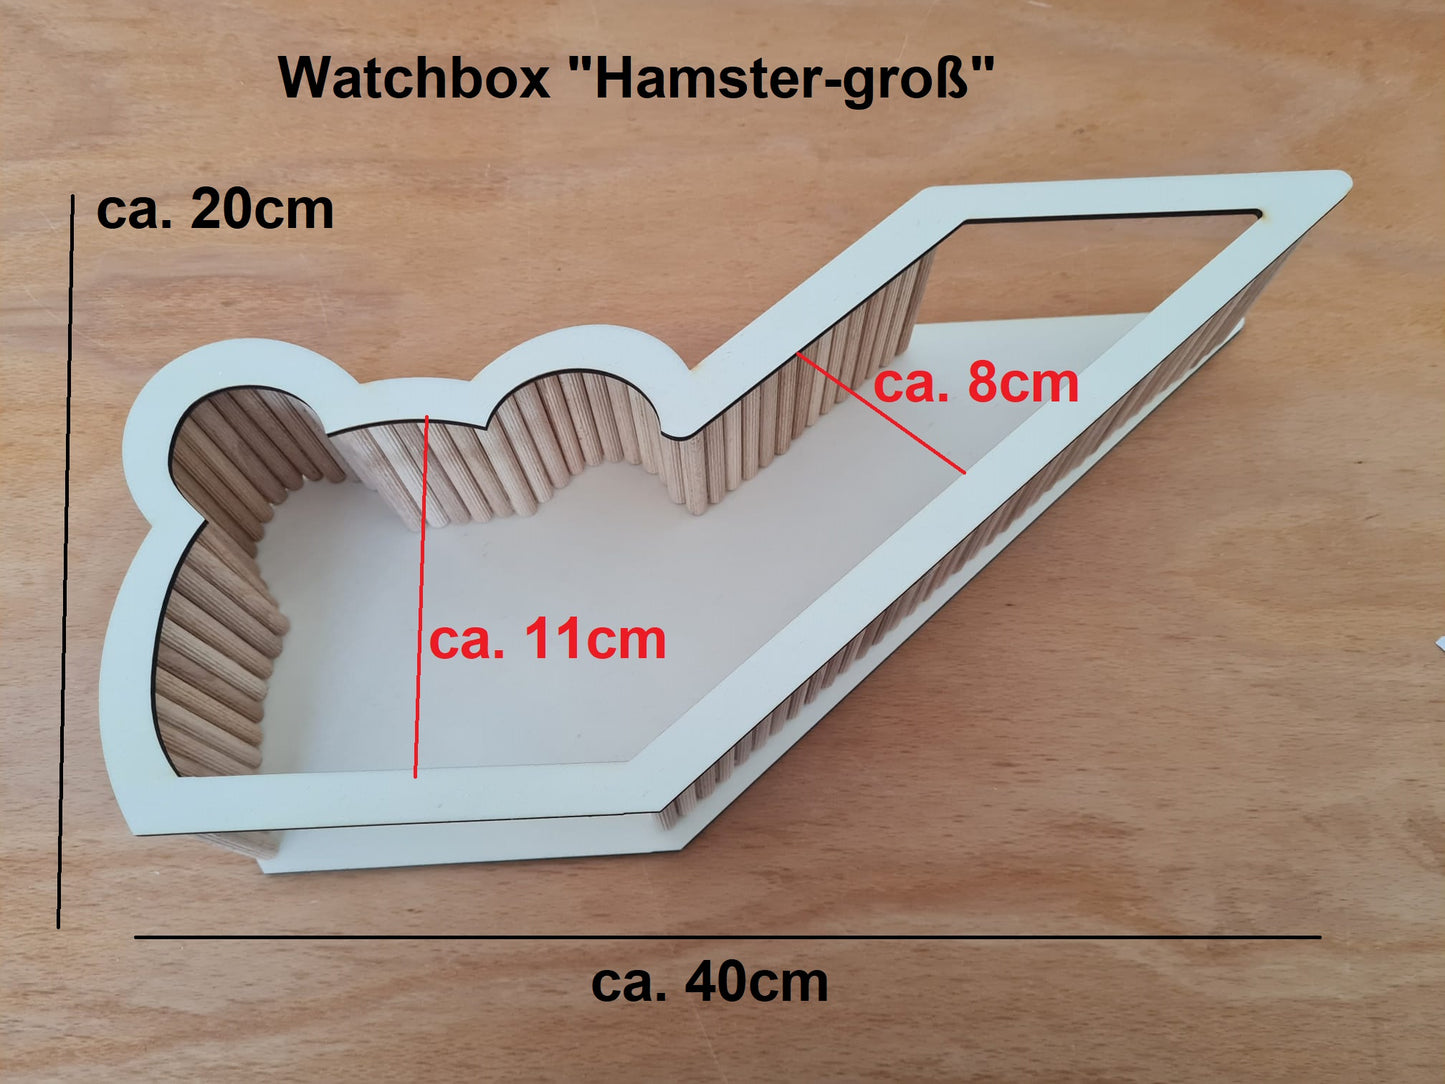 BAUSATZ *Hamster-Groß* Watchbox für Kleinnager